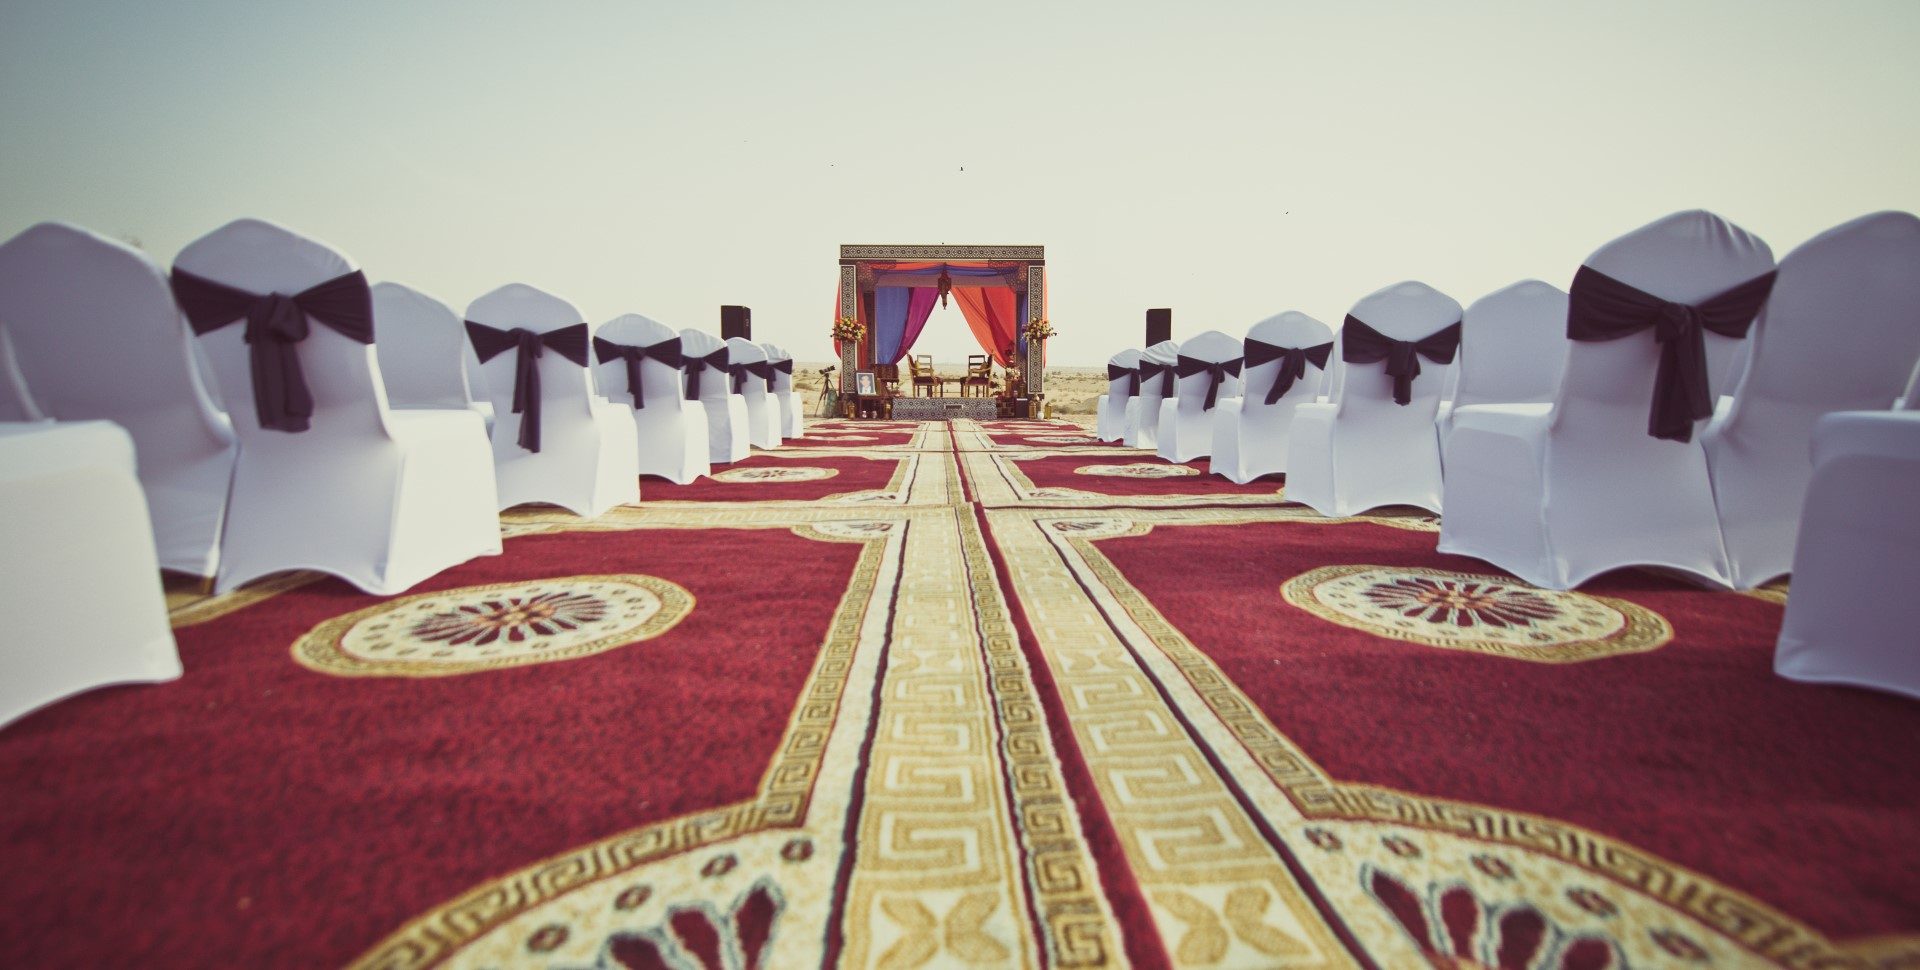 ,sivatag,sivatagi esküvő,dubaj,dubaji esküvő,dubaji sivatag,esküvő sivatagban,különleges esküvői helyszínek,indiai esküvő,arab esküvő,hagyományok,